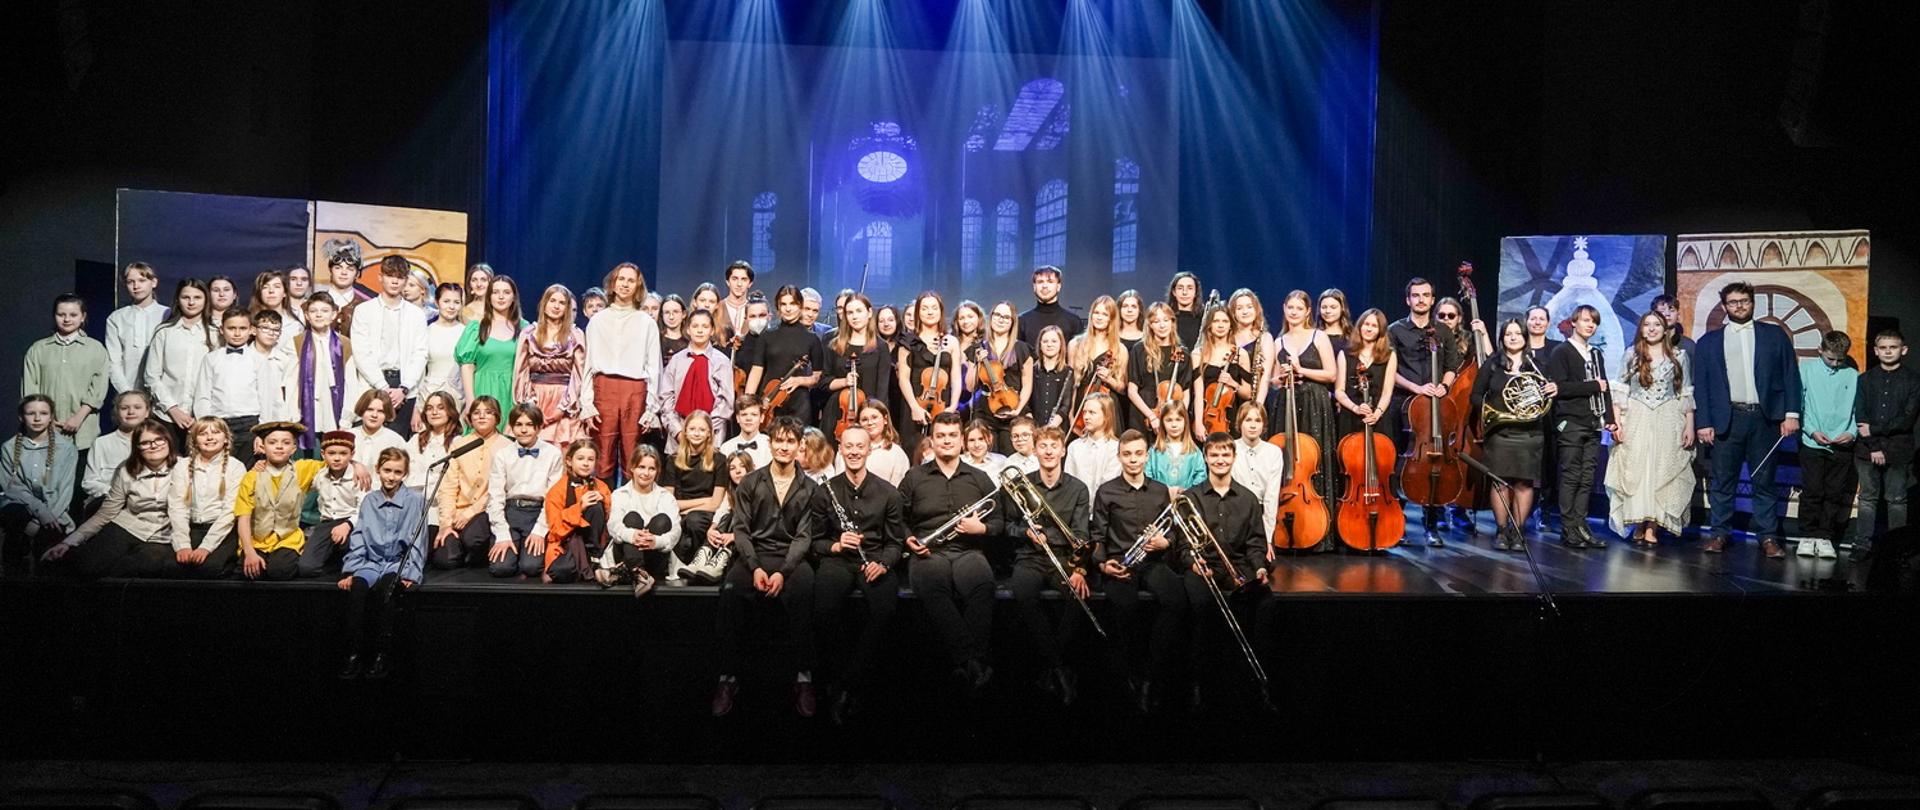 Zdjęcie przedstawia wykonawców spektaklu na scenie DK Oskard w Koninie, orkiestra ubrana na czarno trzyma instrumenty, pozostali wykonawcy w kolorowych strojach, dyrygent z batutą, w tle scenografia.